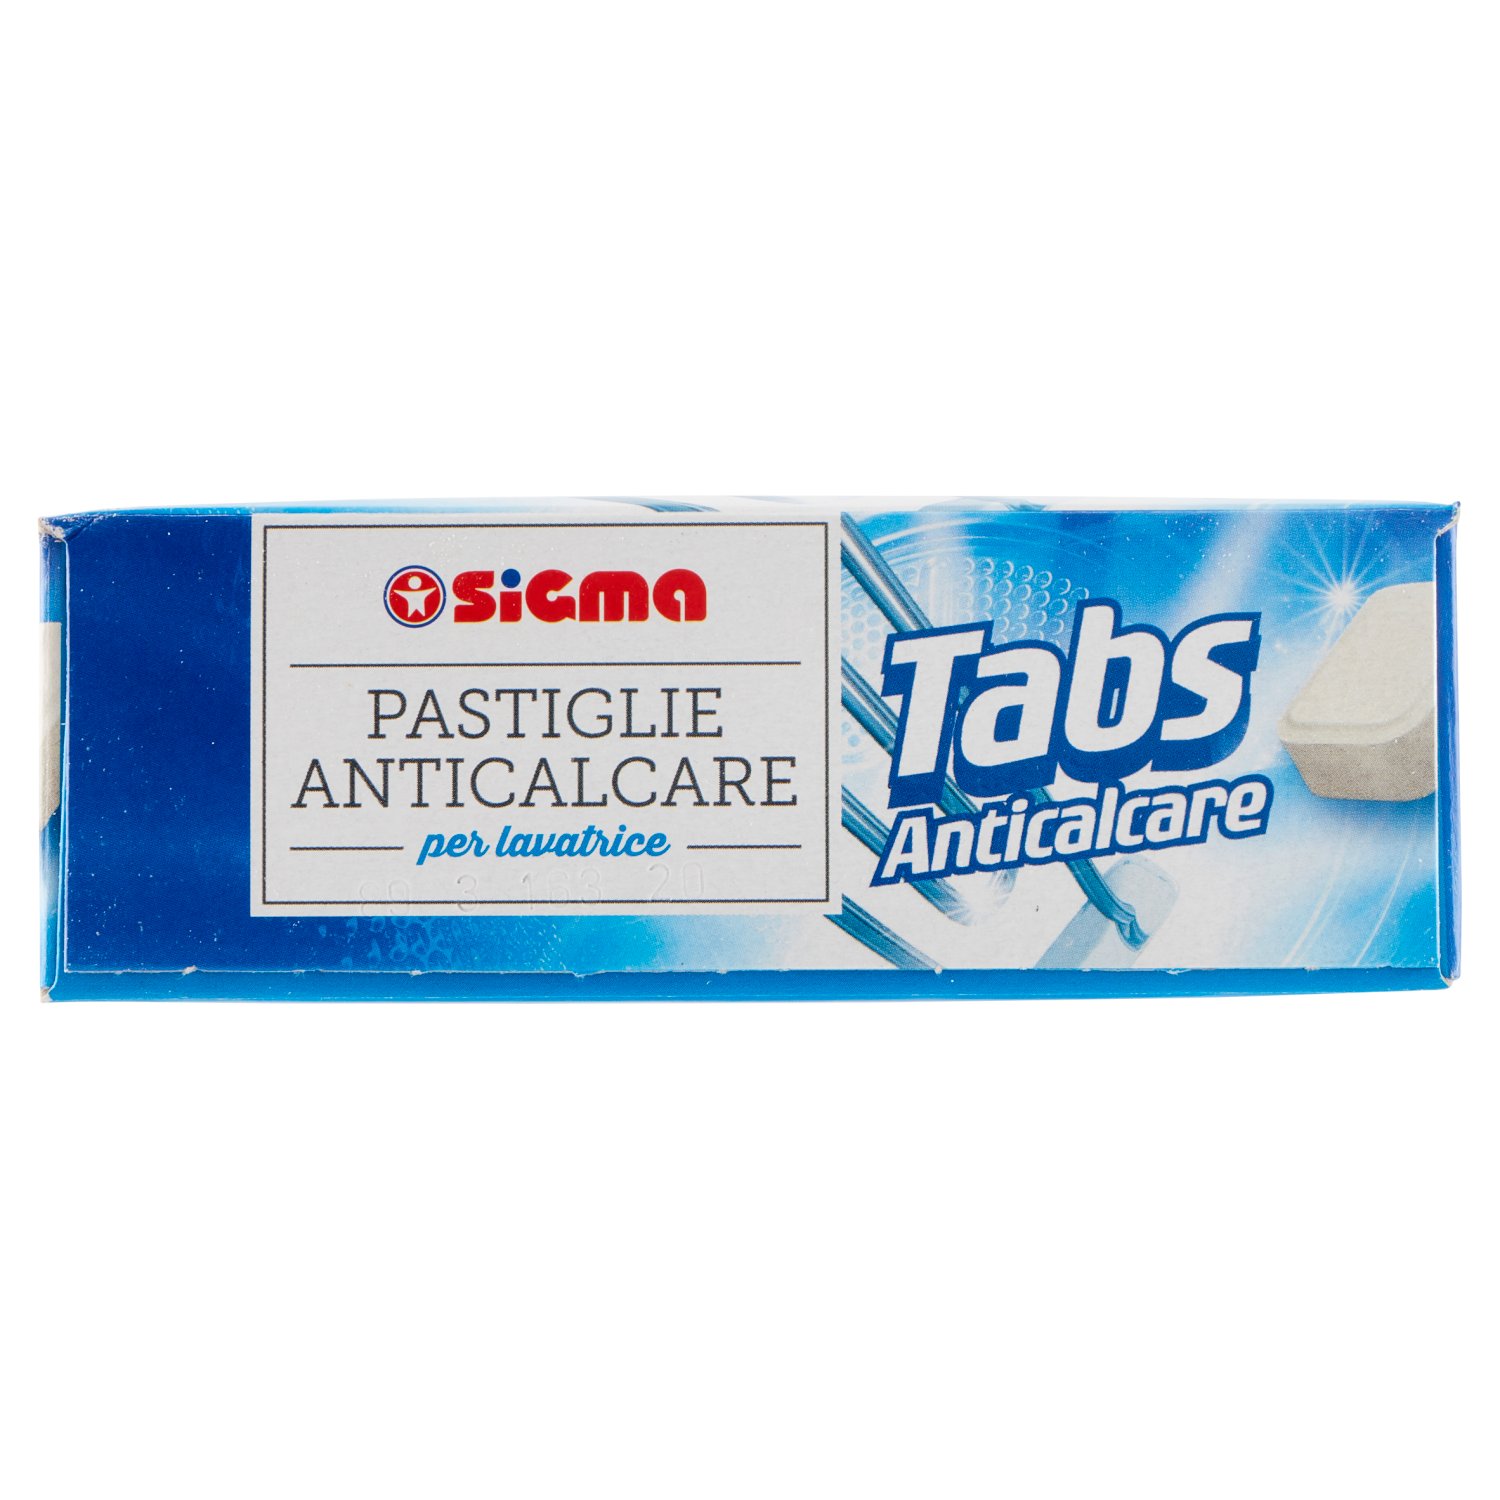 Sigma Pastiglie Anticalcare per lavatrice Tabs Anticalcare 16 x 16 g -  SuperSIGMA